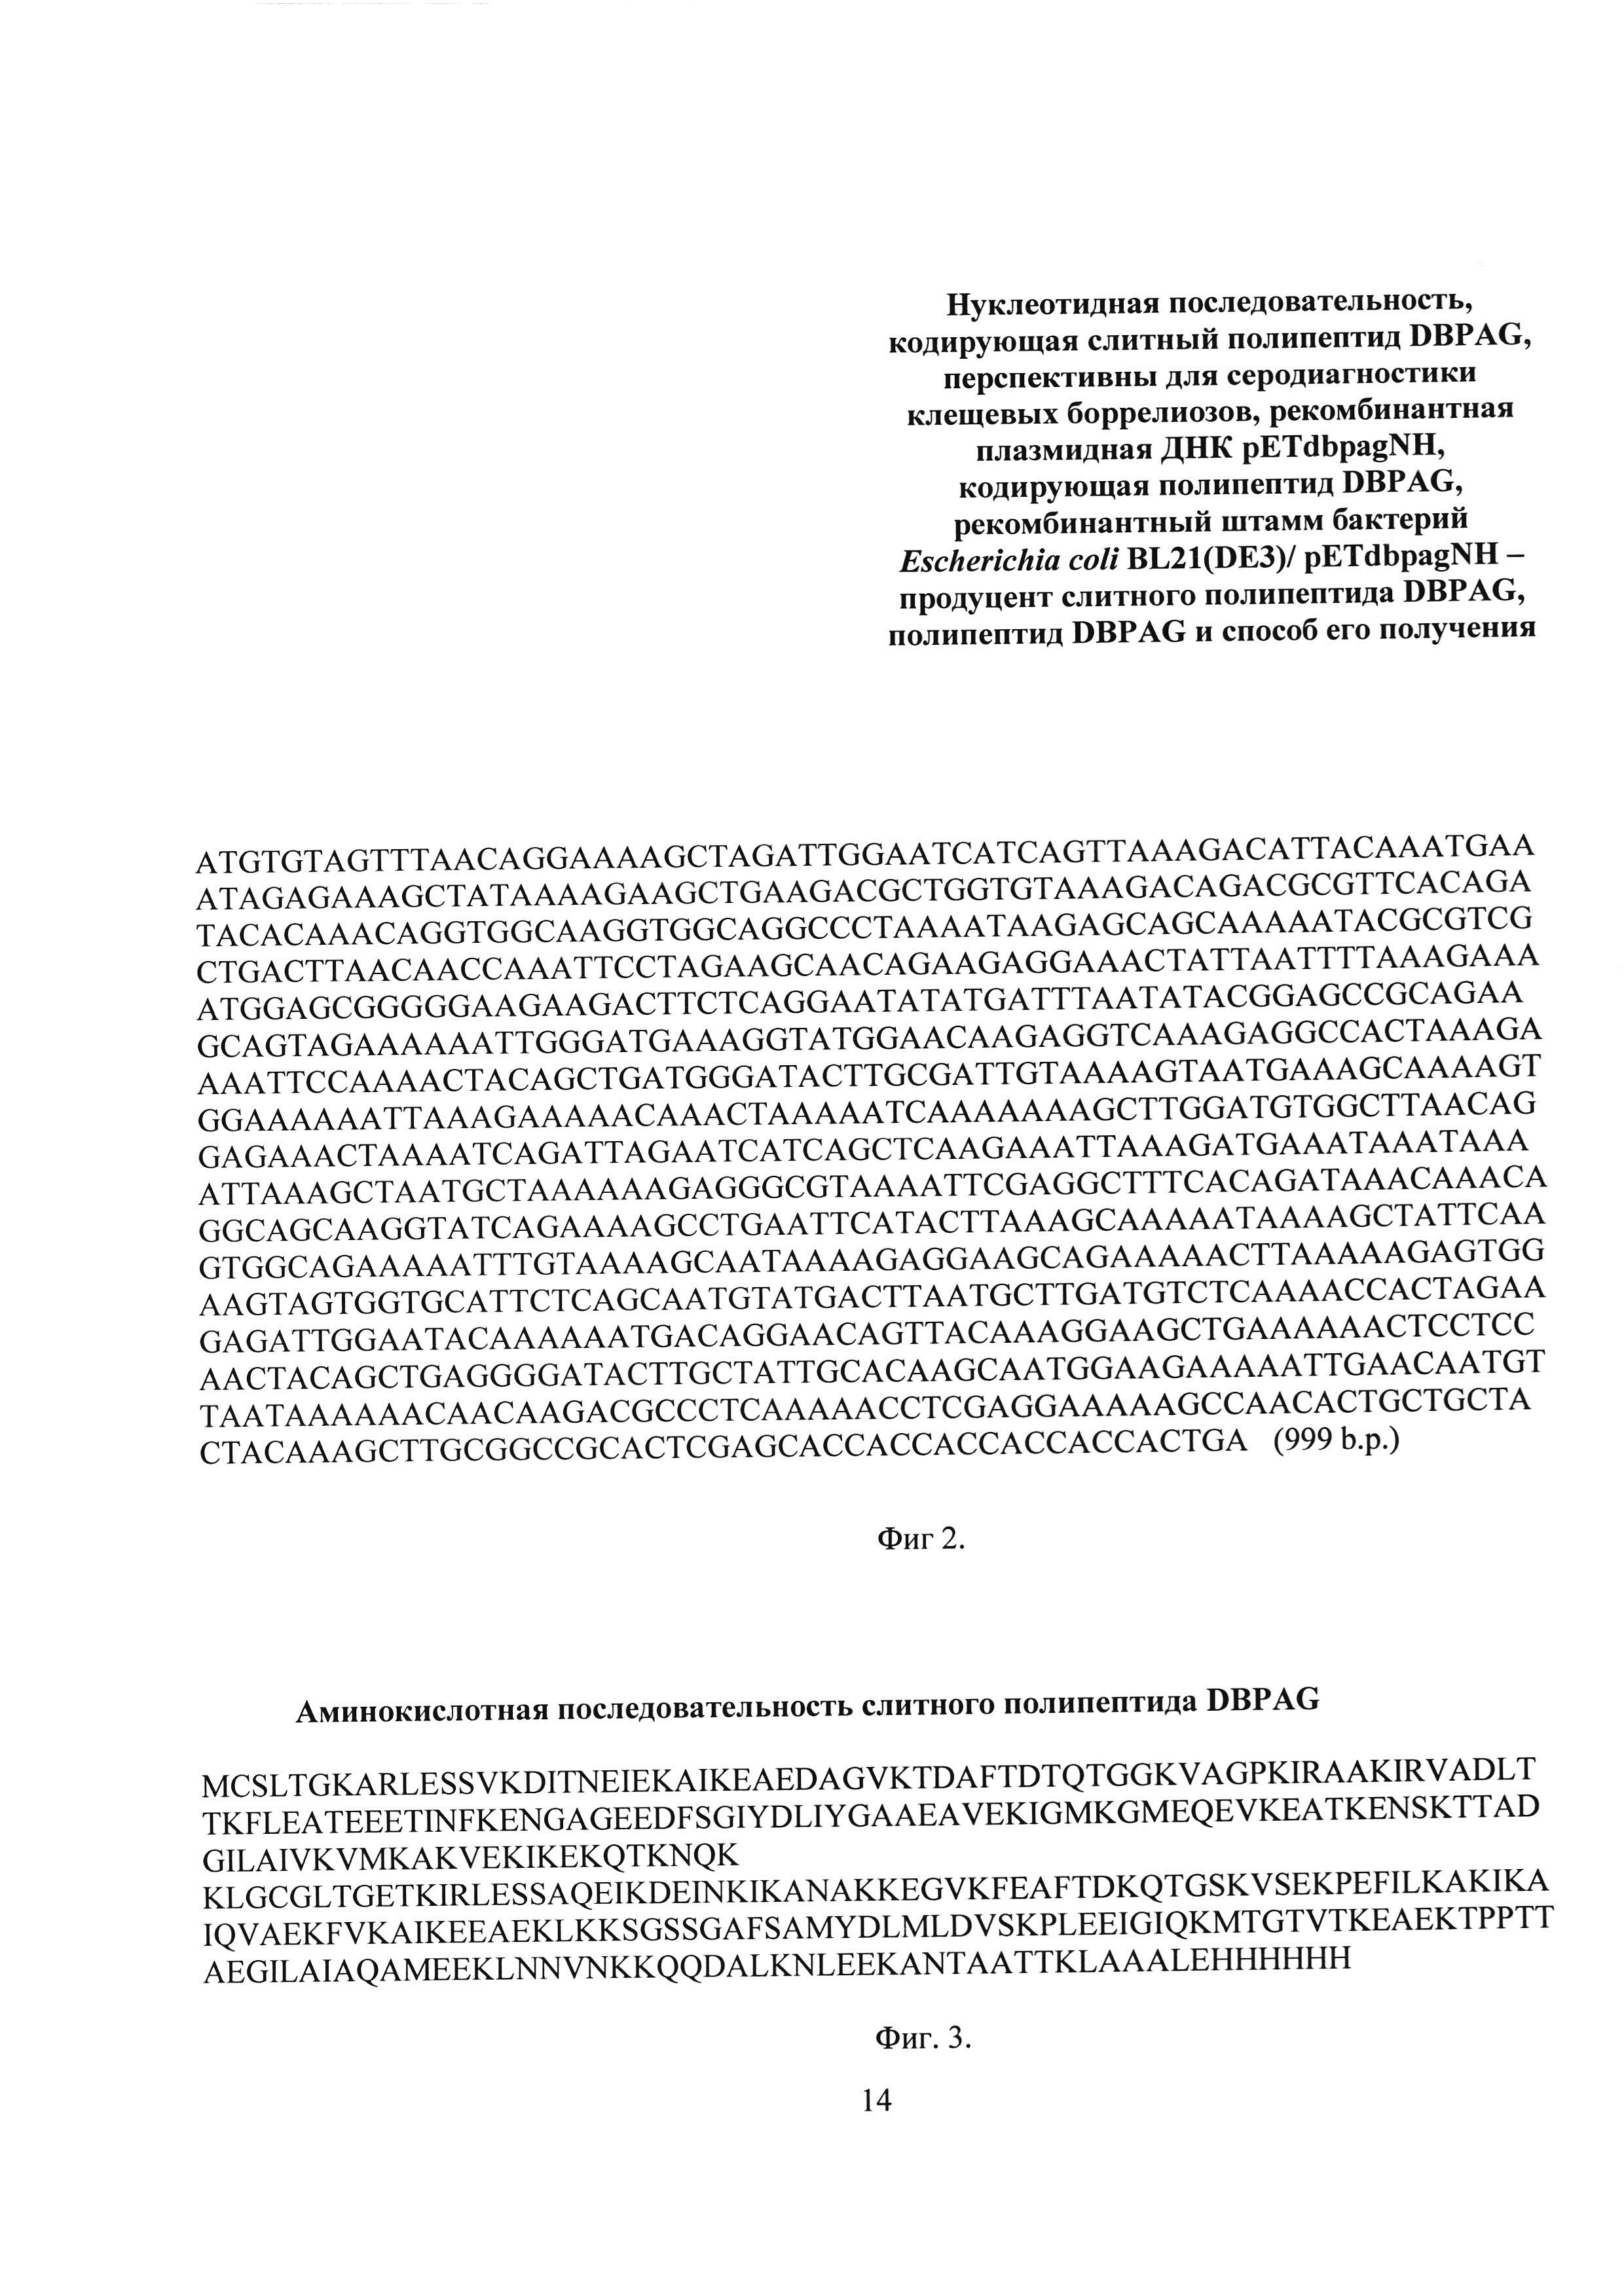 Нуклеотидная последовательность, кодирующая полипептид DBPAG, перспективный для серодиагностики клещевого боррелиоза, рекомбинантная плазмидная ДНК pETdbpagNH, кодирующая слитный полипептид DBPAG, рекомбинантный штамм бактерий Escherichia coli BL21(DE3)/ pETdbpagNH - продуцент полипептида DBPAG, полипептид DBPAG и способ его получения